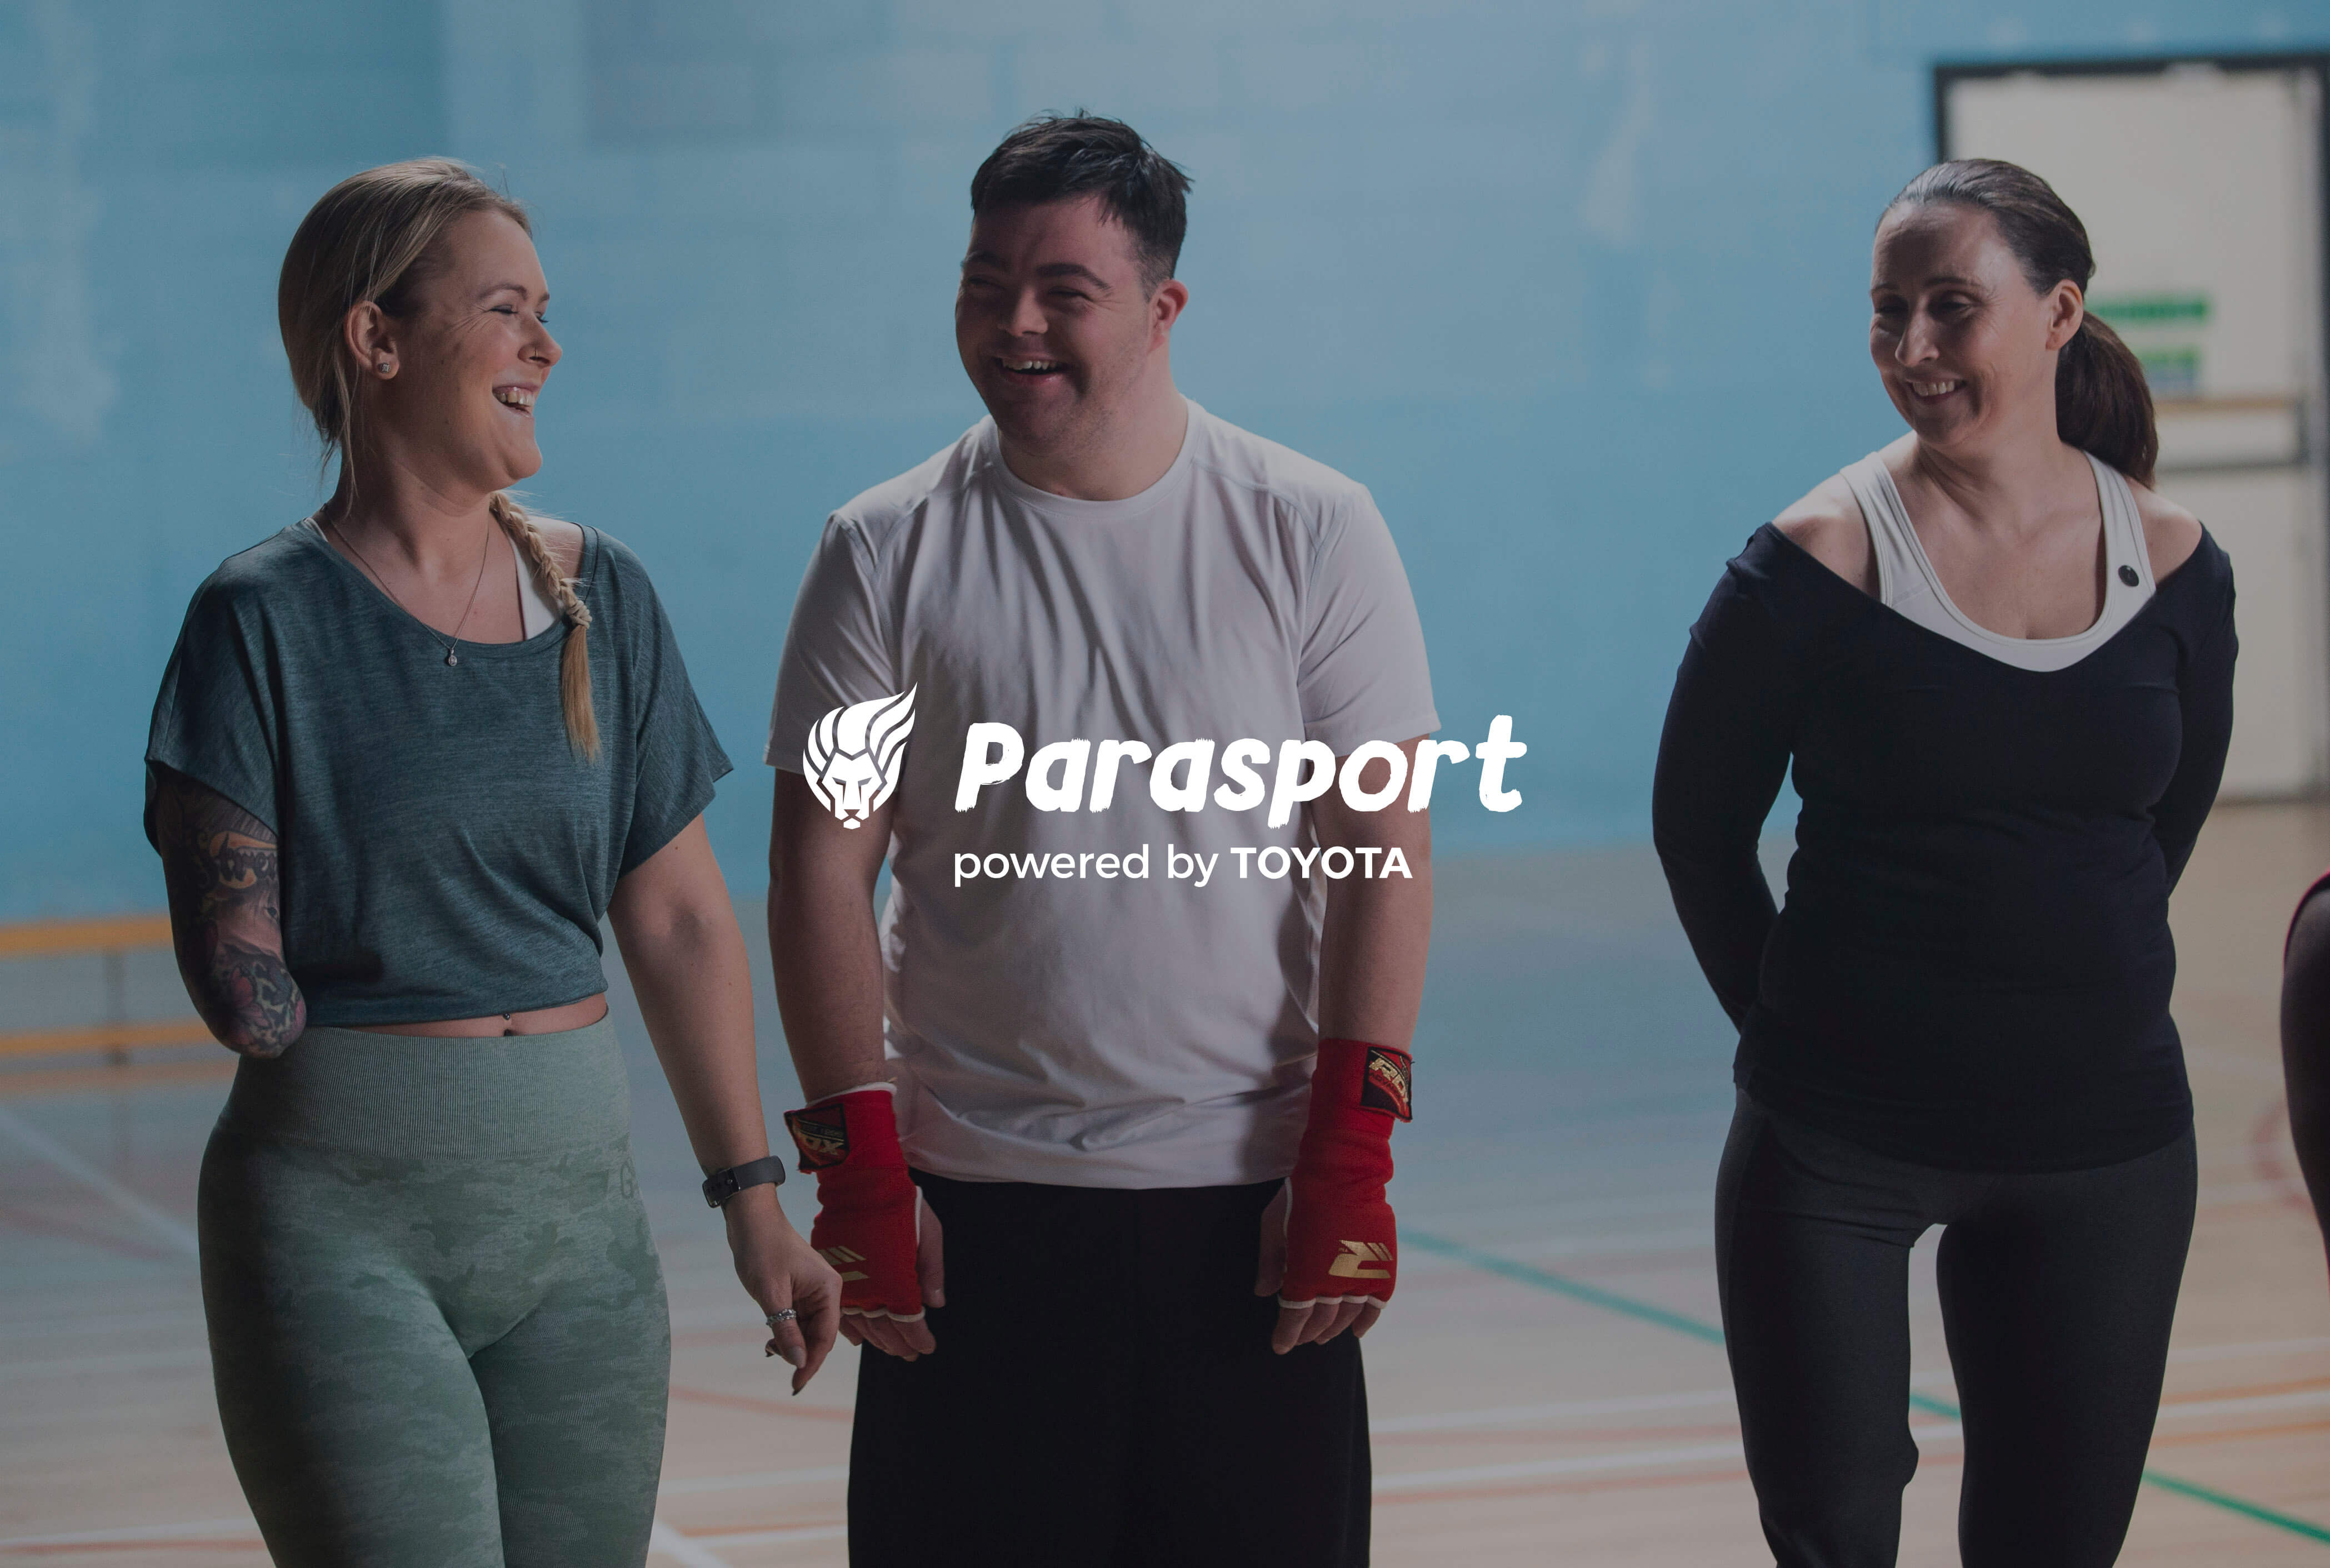 Introducing Parasport!